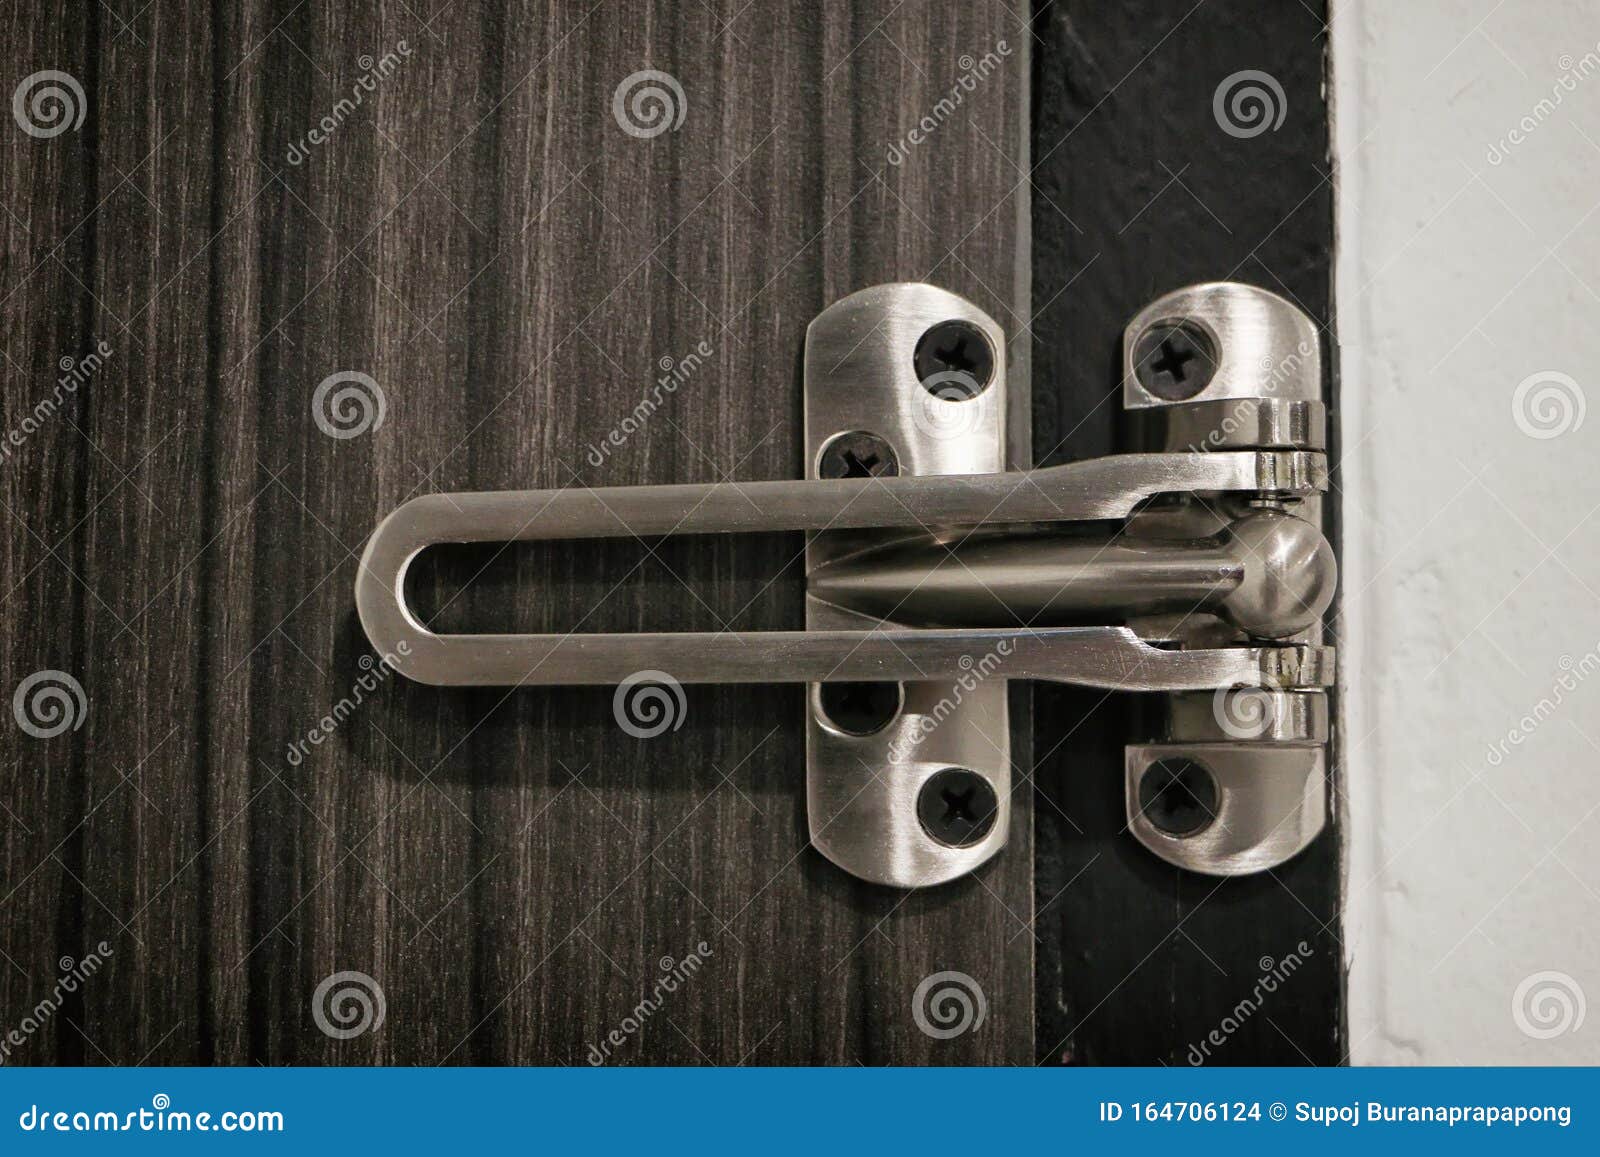 Metallriegel-Türschutz, Sicherheitsriegel, Schleusentüre, Haushaltsgeräte  Stockfoto - Bild von griff, nahaufnahme: 164706124